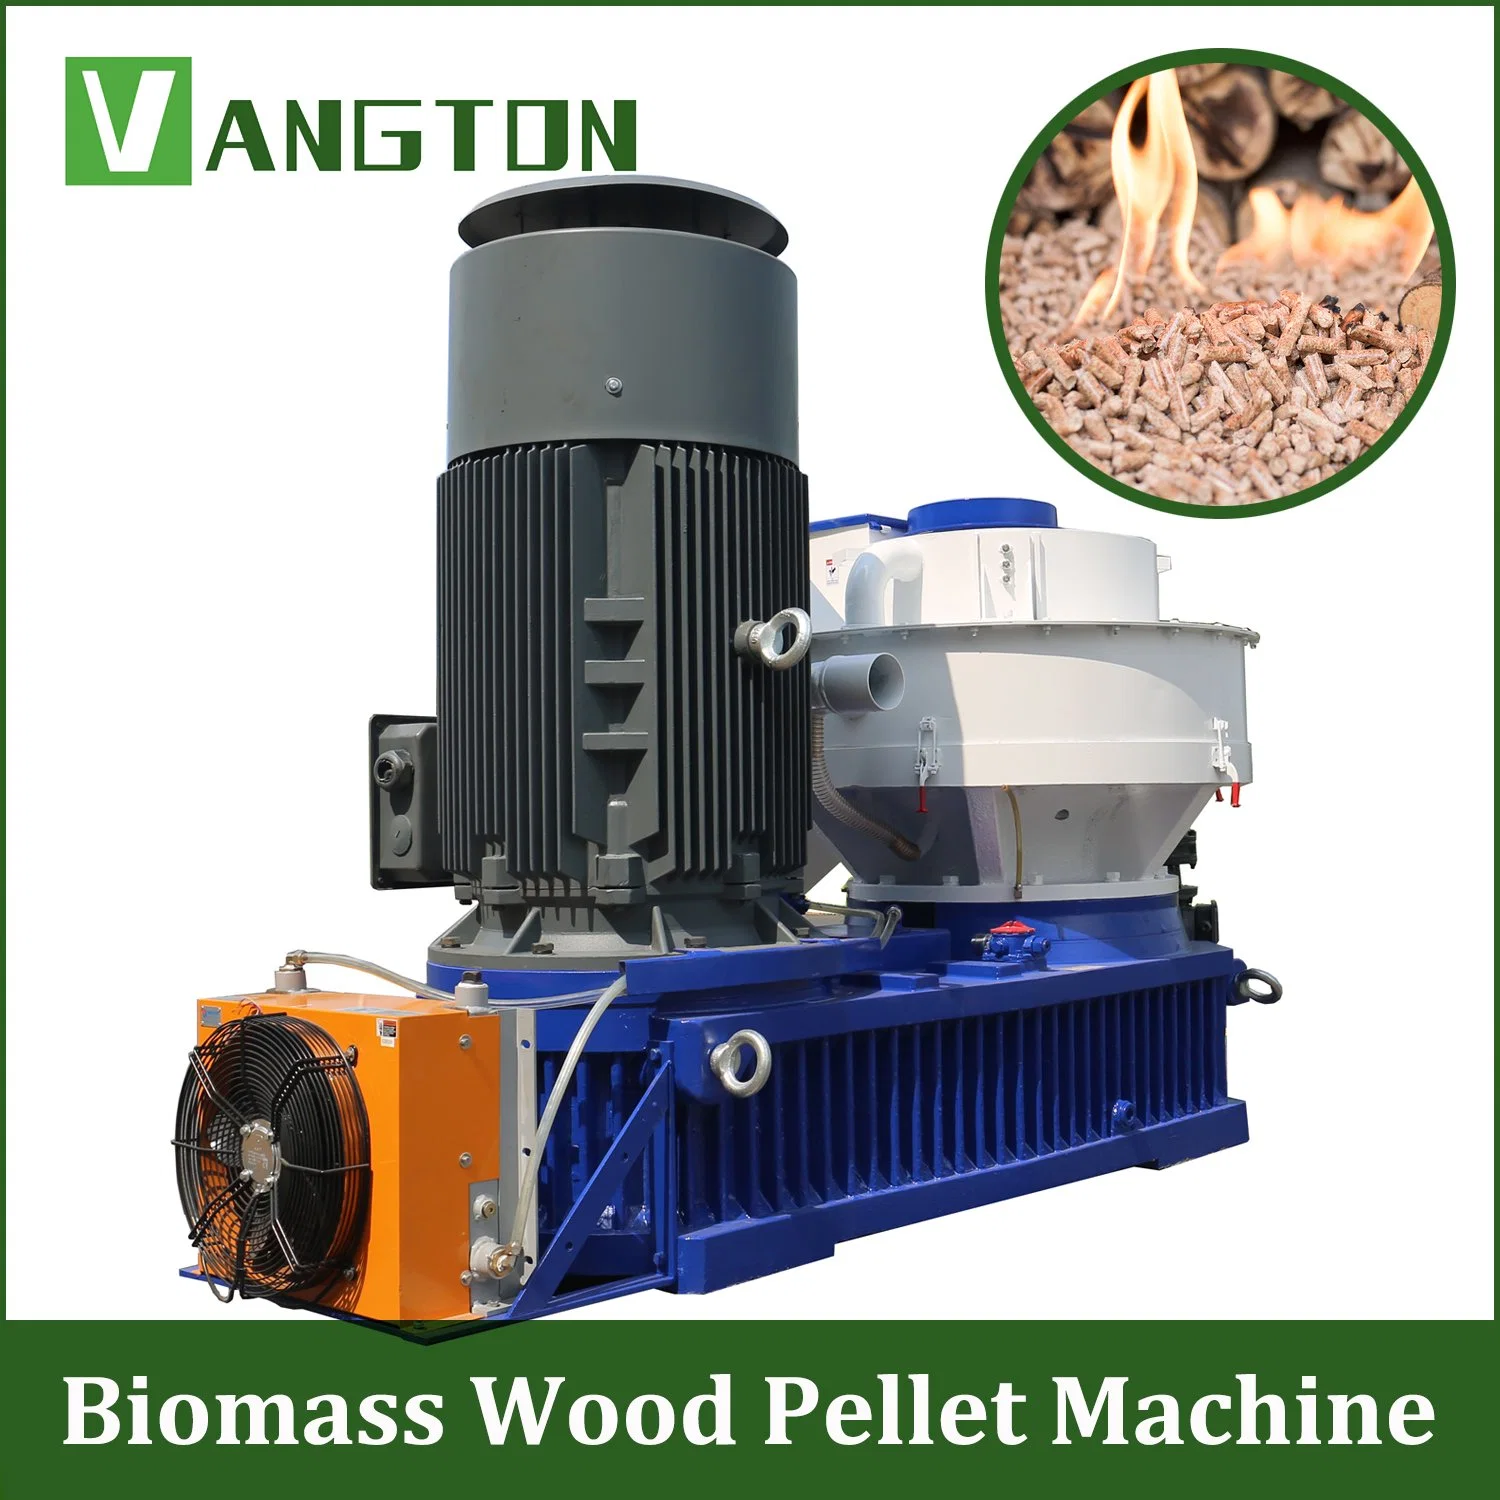 Usine de granulation de paille de blé, de biomasse de bois et de sciure de bois pour la fabrication de granulés - Fournisseurs.